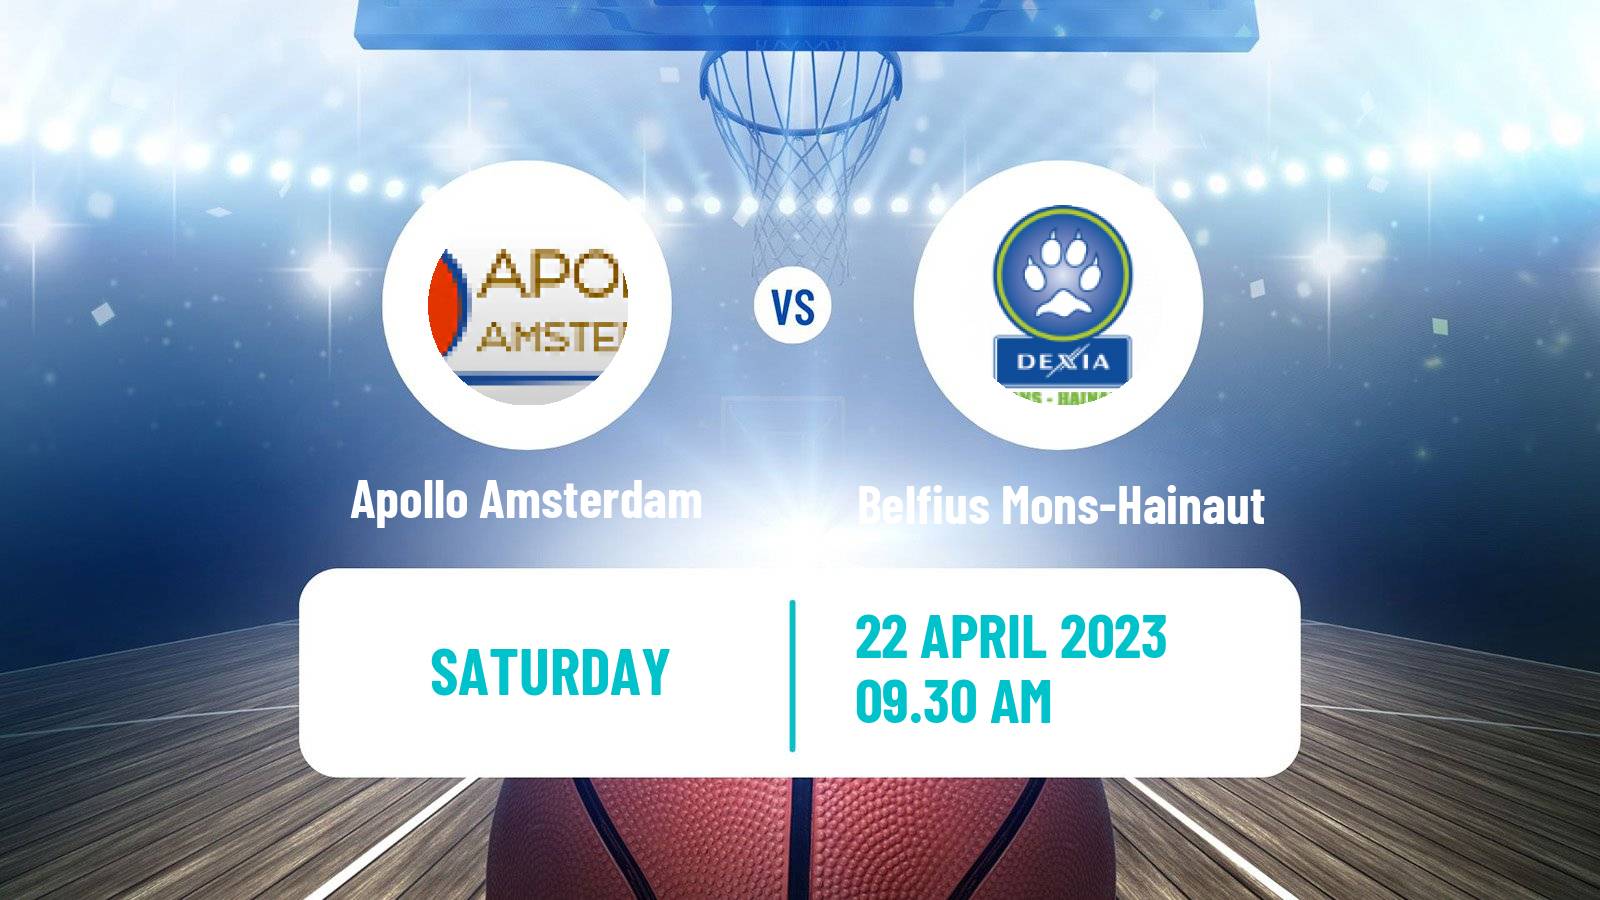 Basketball BNXT League Apollo Amsterdam - Belfius Mons-Hainaut